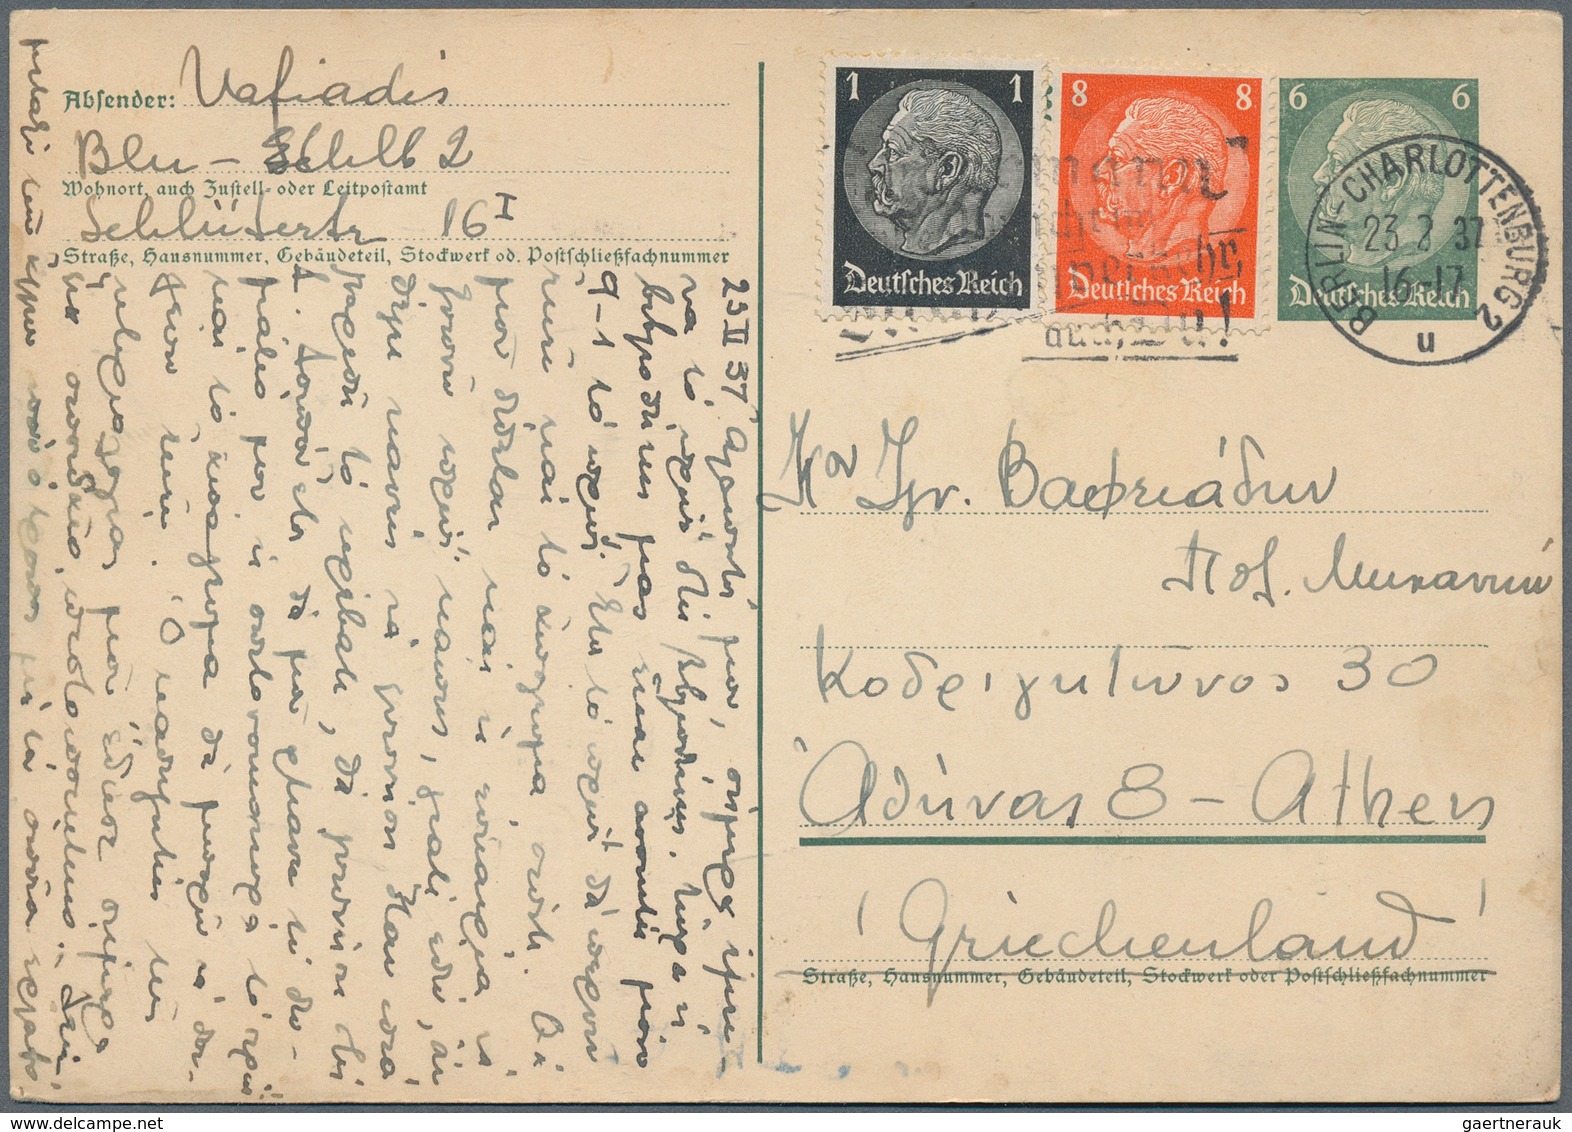 31444 Deutsches Reich: 1873/1944, Partie von ca. 120 Briefen/Karten/Ganzsachen, teils Bedarfsspuren, alles